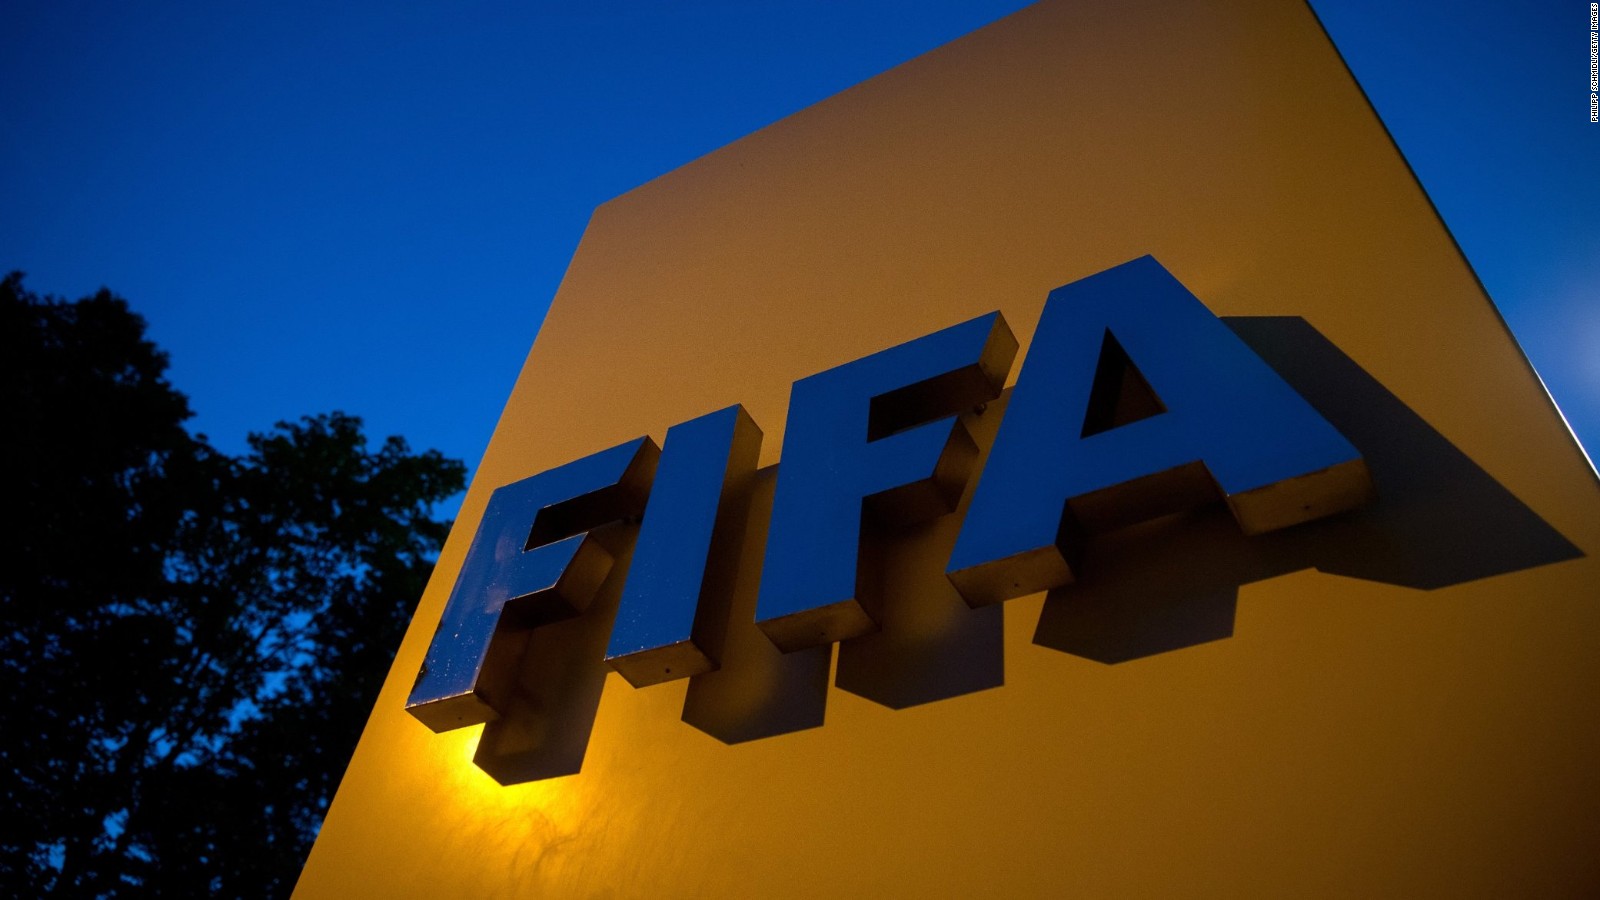 فيفا يوافق على مشاركة 48 منتخبا ضمن 16 مجموعة في كأس العالم